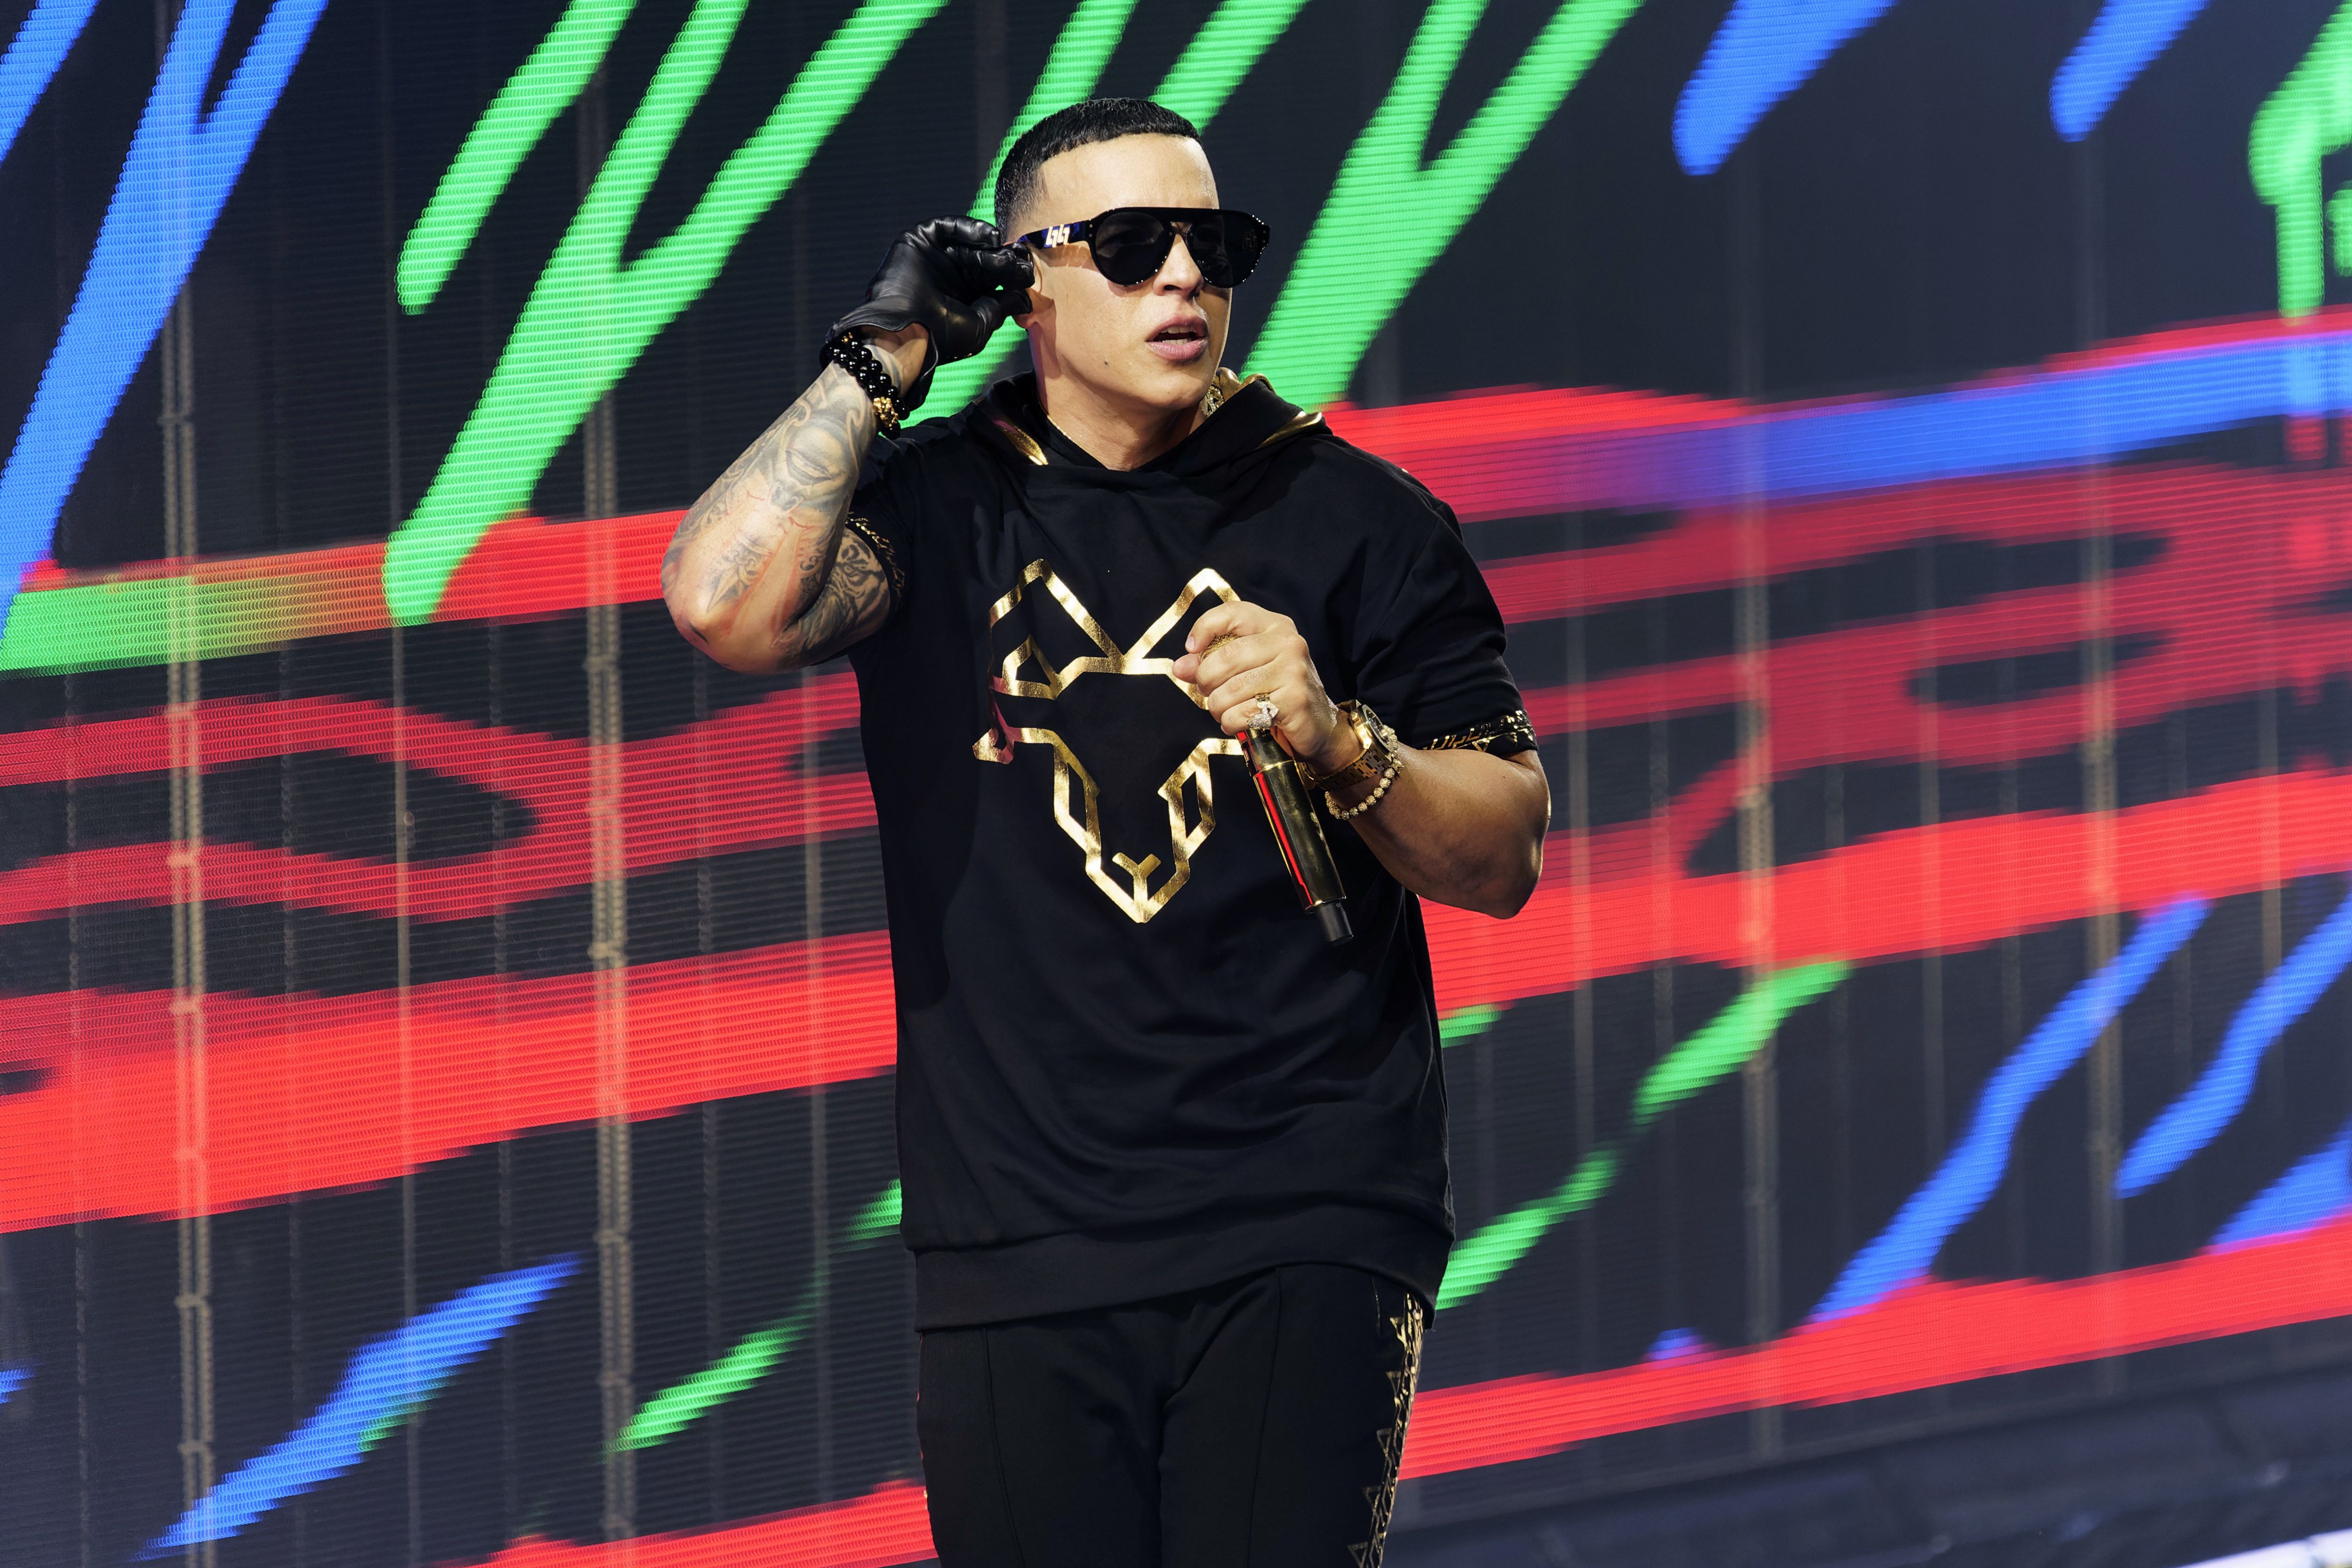 ARCHIVO - Daddy Yankee presenta un concierto de su gira "La última vuelta" en la Arena Allstate el 4 de septiembre de 2022, en Rosemont, Illinois. Daddy Yankee se presentó en concierto en el Foro Sol de la Ciudad de México el 29 de noviembre de 2022. (Foto Rob Grabowski/Invision/AP, archivo)